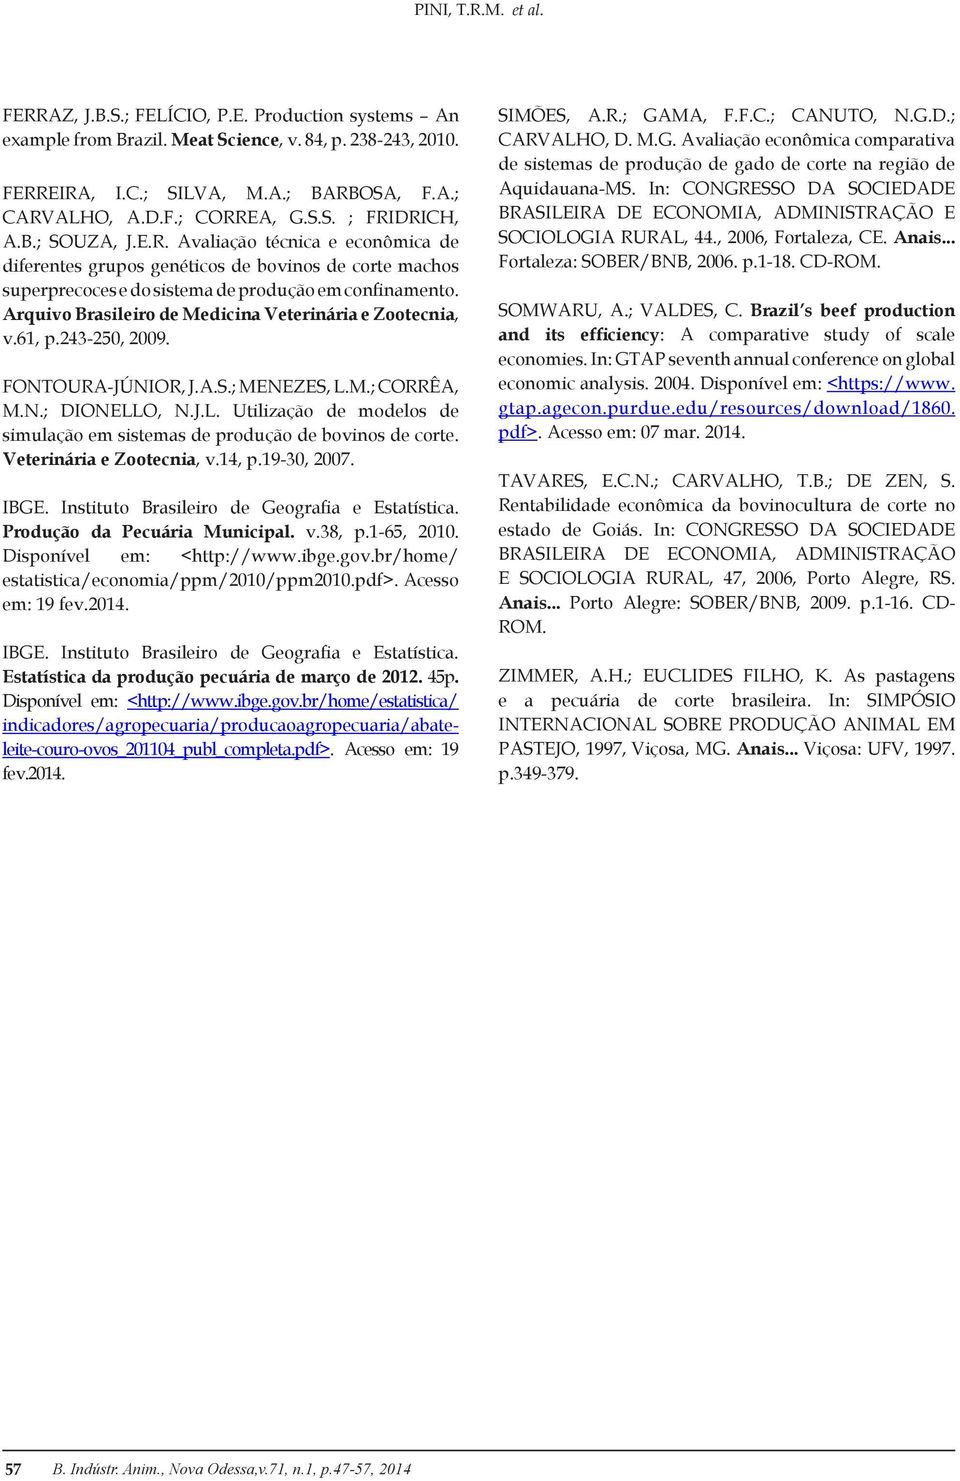 Arquivo Brasileiro de Medicina Veterinária e Zootecnia, v.61, p.243-250, 2009. FONTOURA-JÚNIOR, J.A.S.; MENEZES, L.M.; CORRÊA, M.N.; DIONELLO, N.J.L. Utilização de modelos de simulação em sistemas de produção de bovinos de corte.